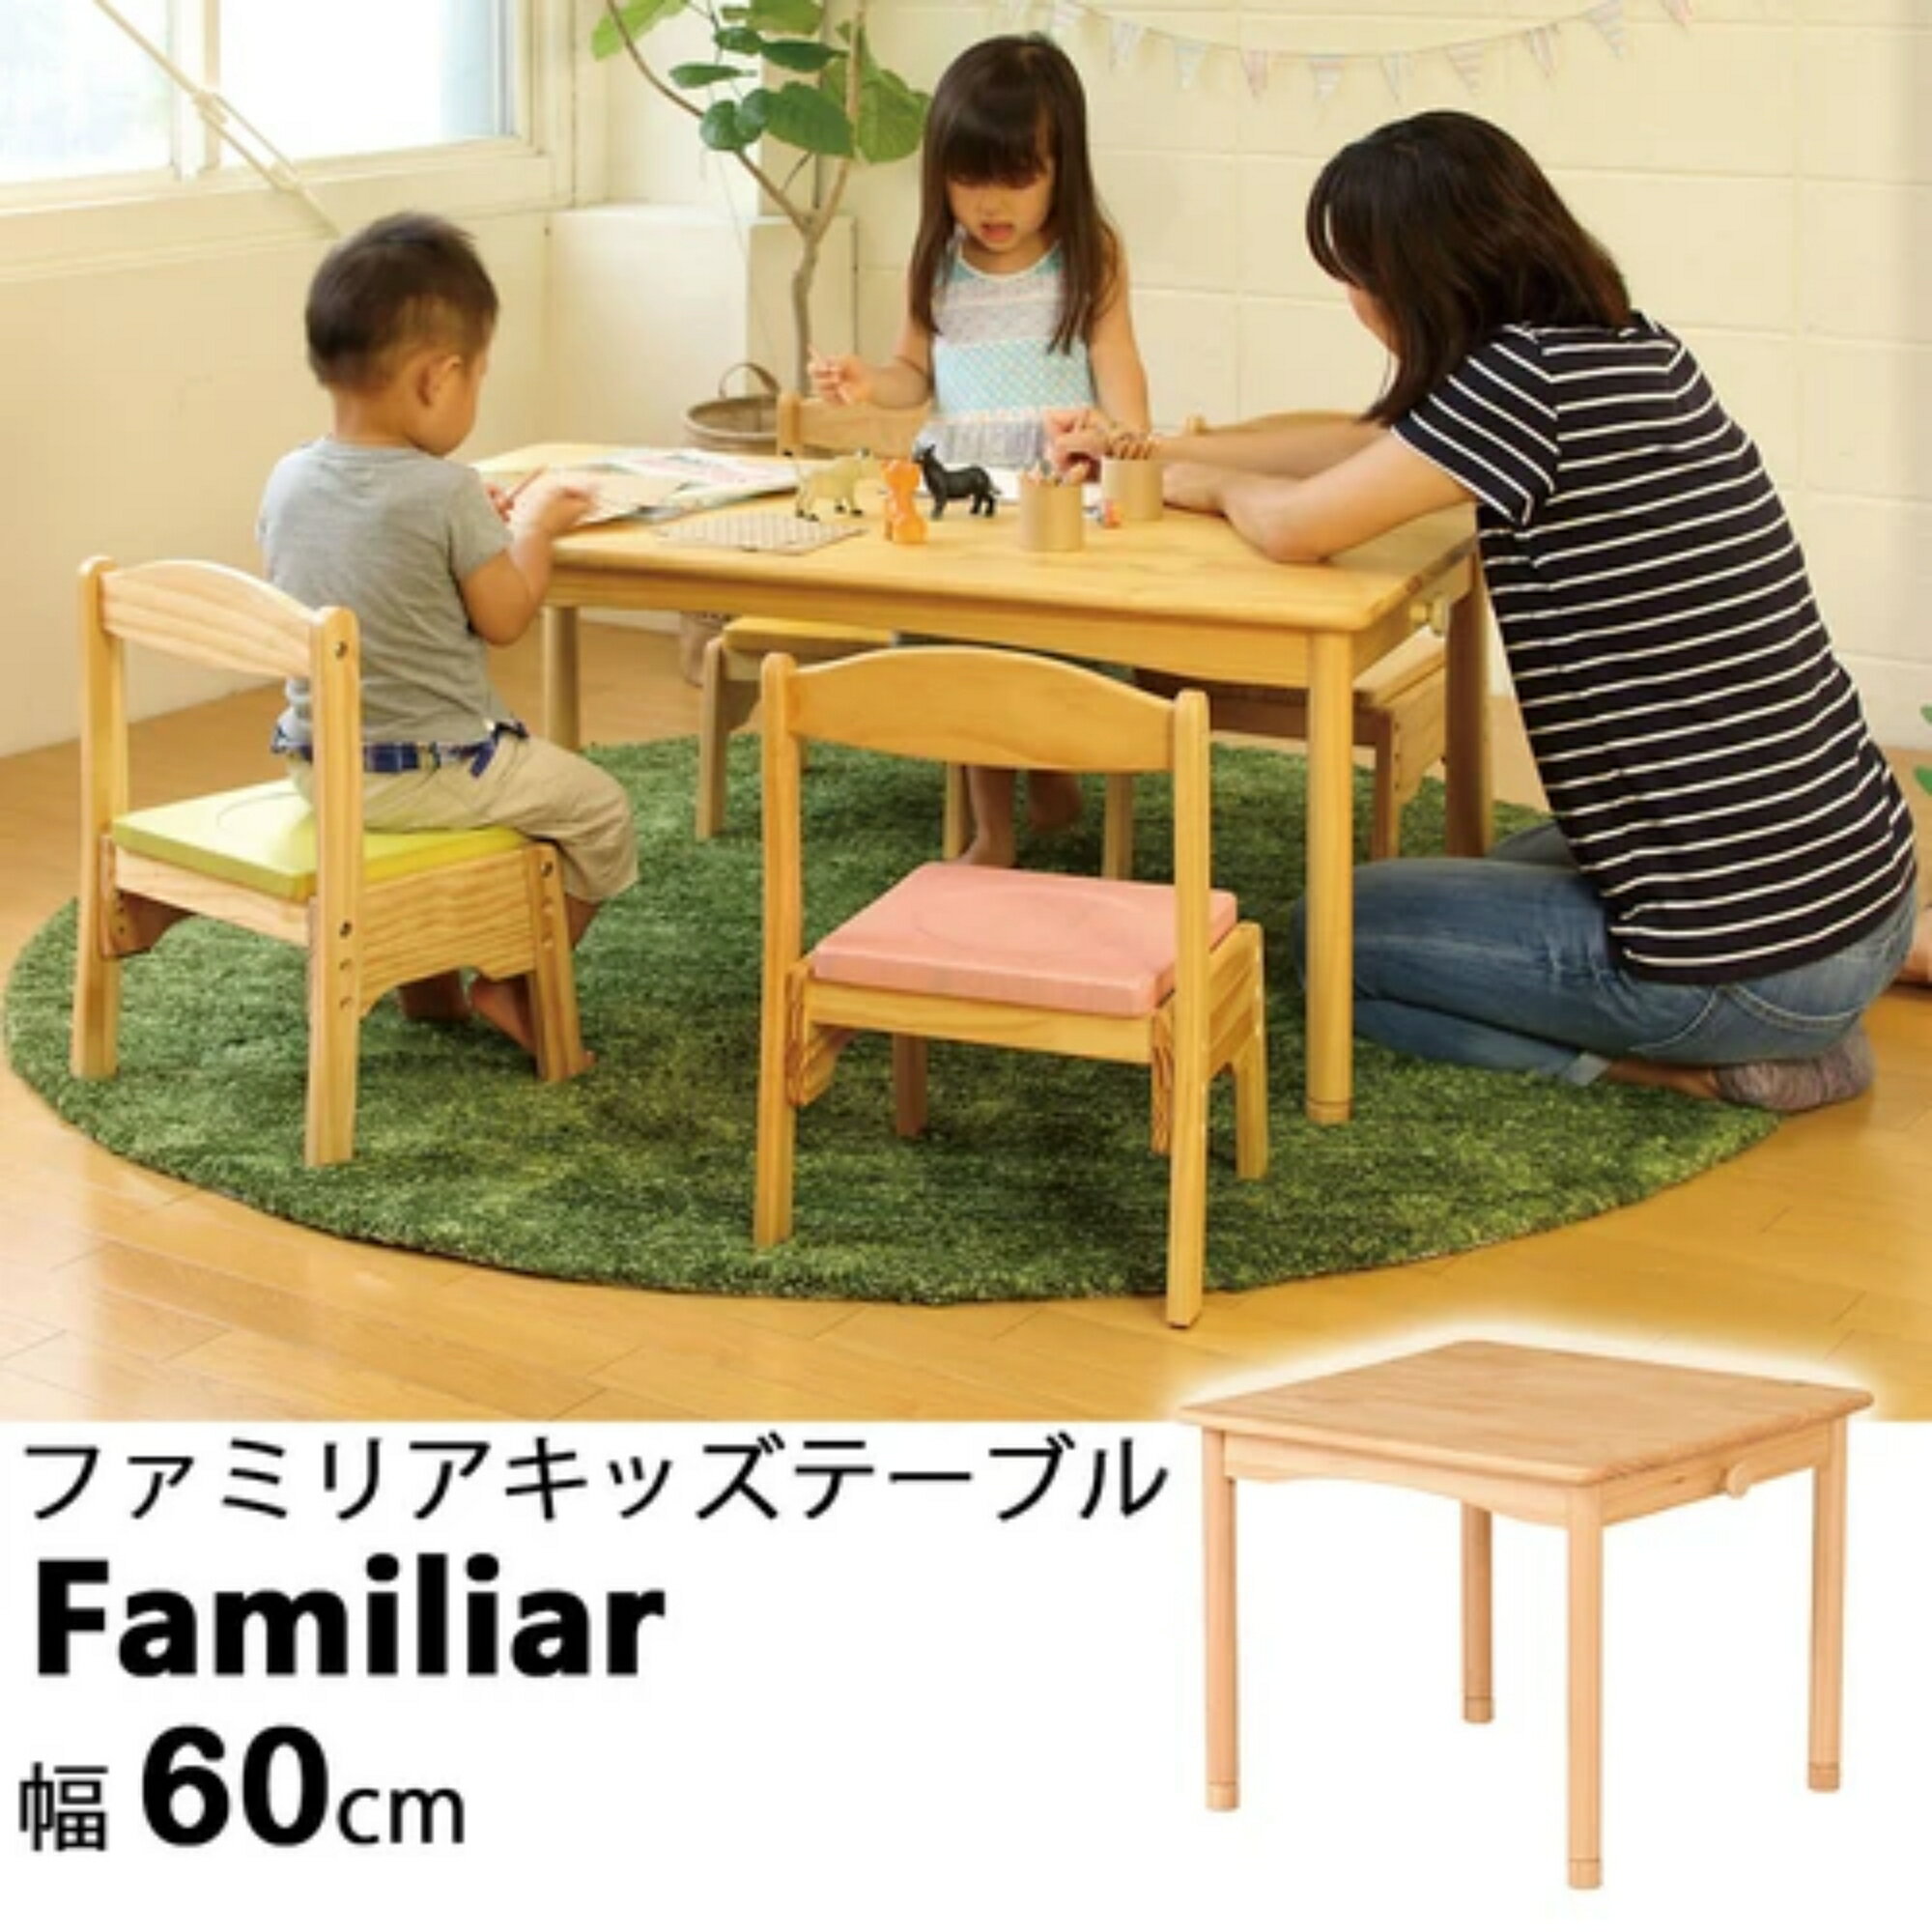 幅60cm ファミリアキッズテーブル 子供用机 木製 高さ調節可能 FAM-T60 FAMT60NA koeki